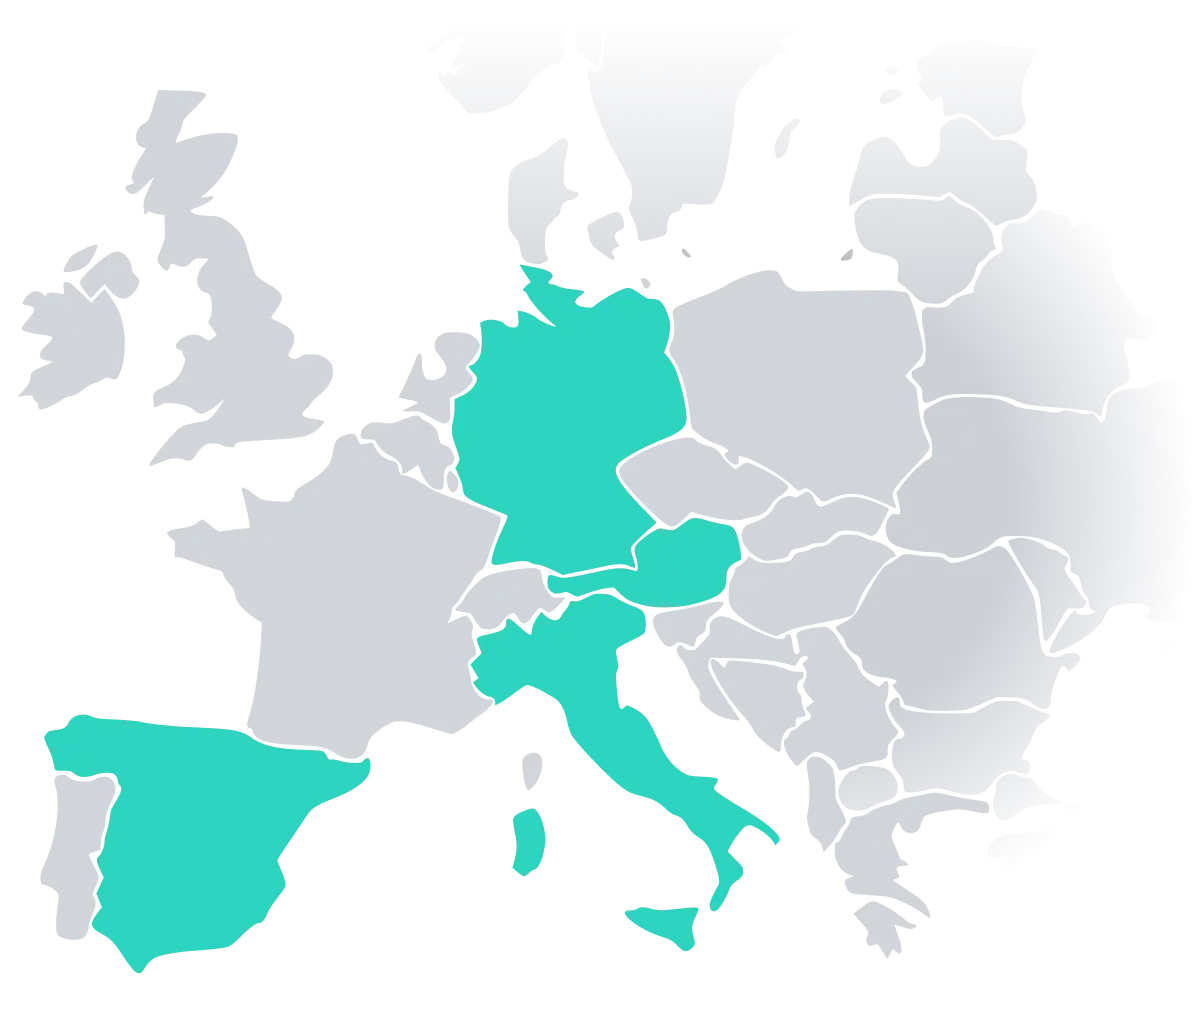 Europakarte mit Österreich, Deutschland, Spanien und Italien mit grüner Markierung für POS-Konformität von fiskaly